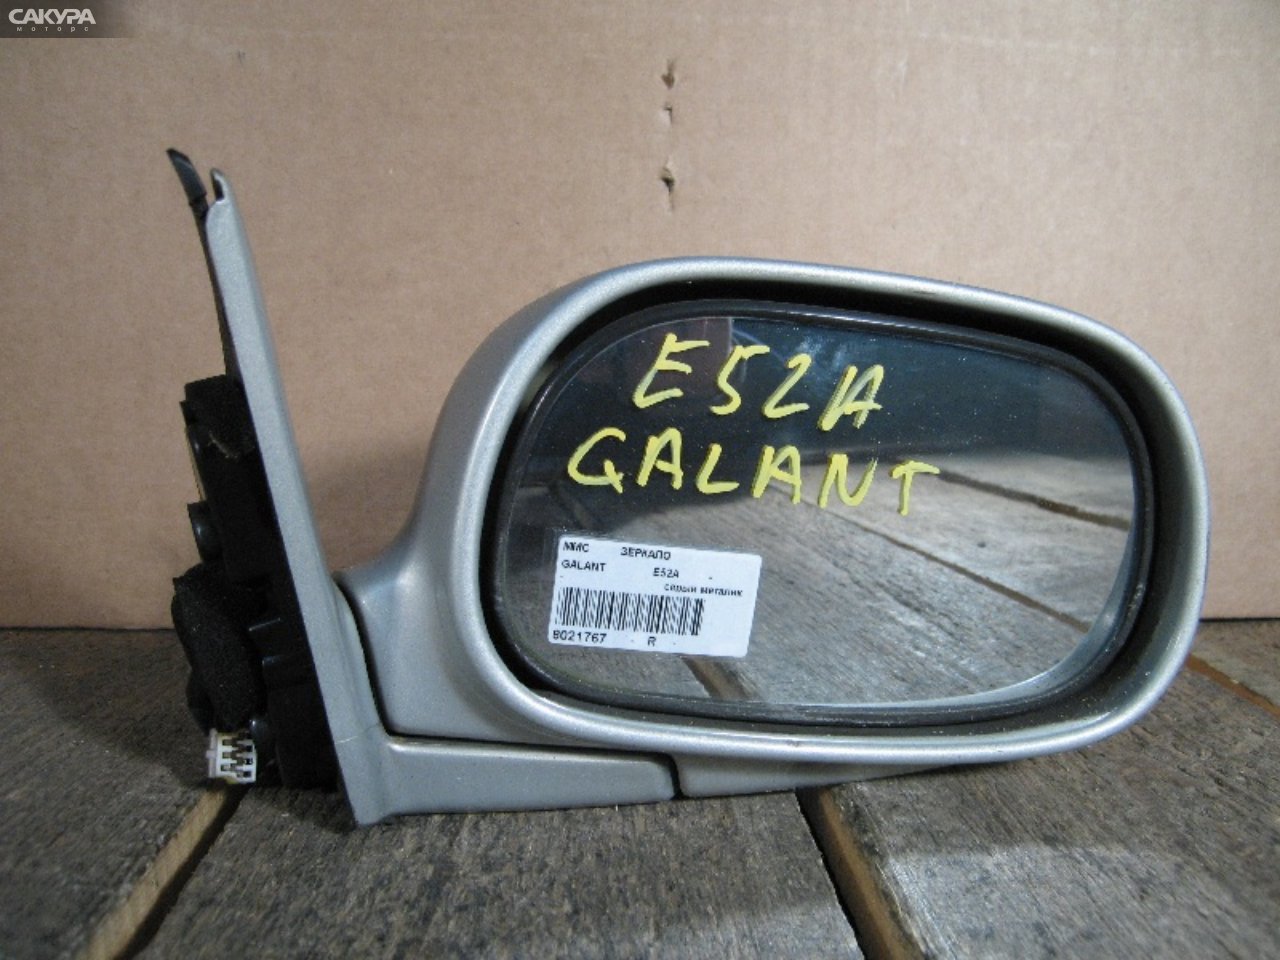 Зеркало боковое правое Mitsubishi Galant E52A: купить в Сакура Абакан.